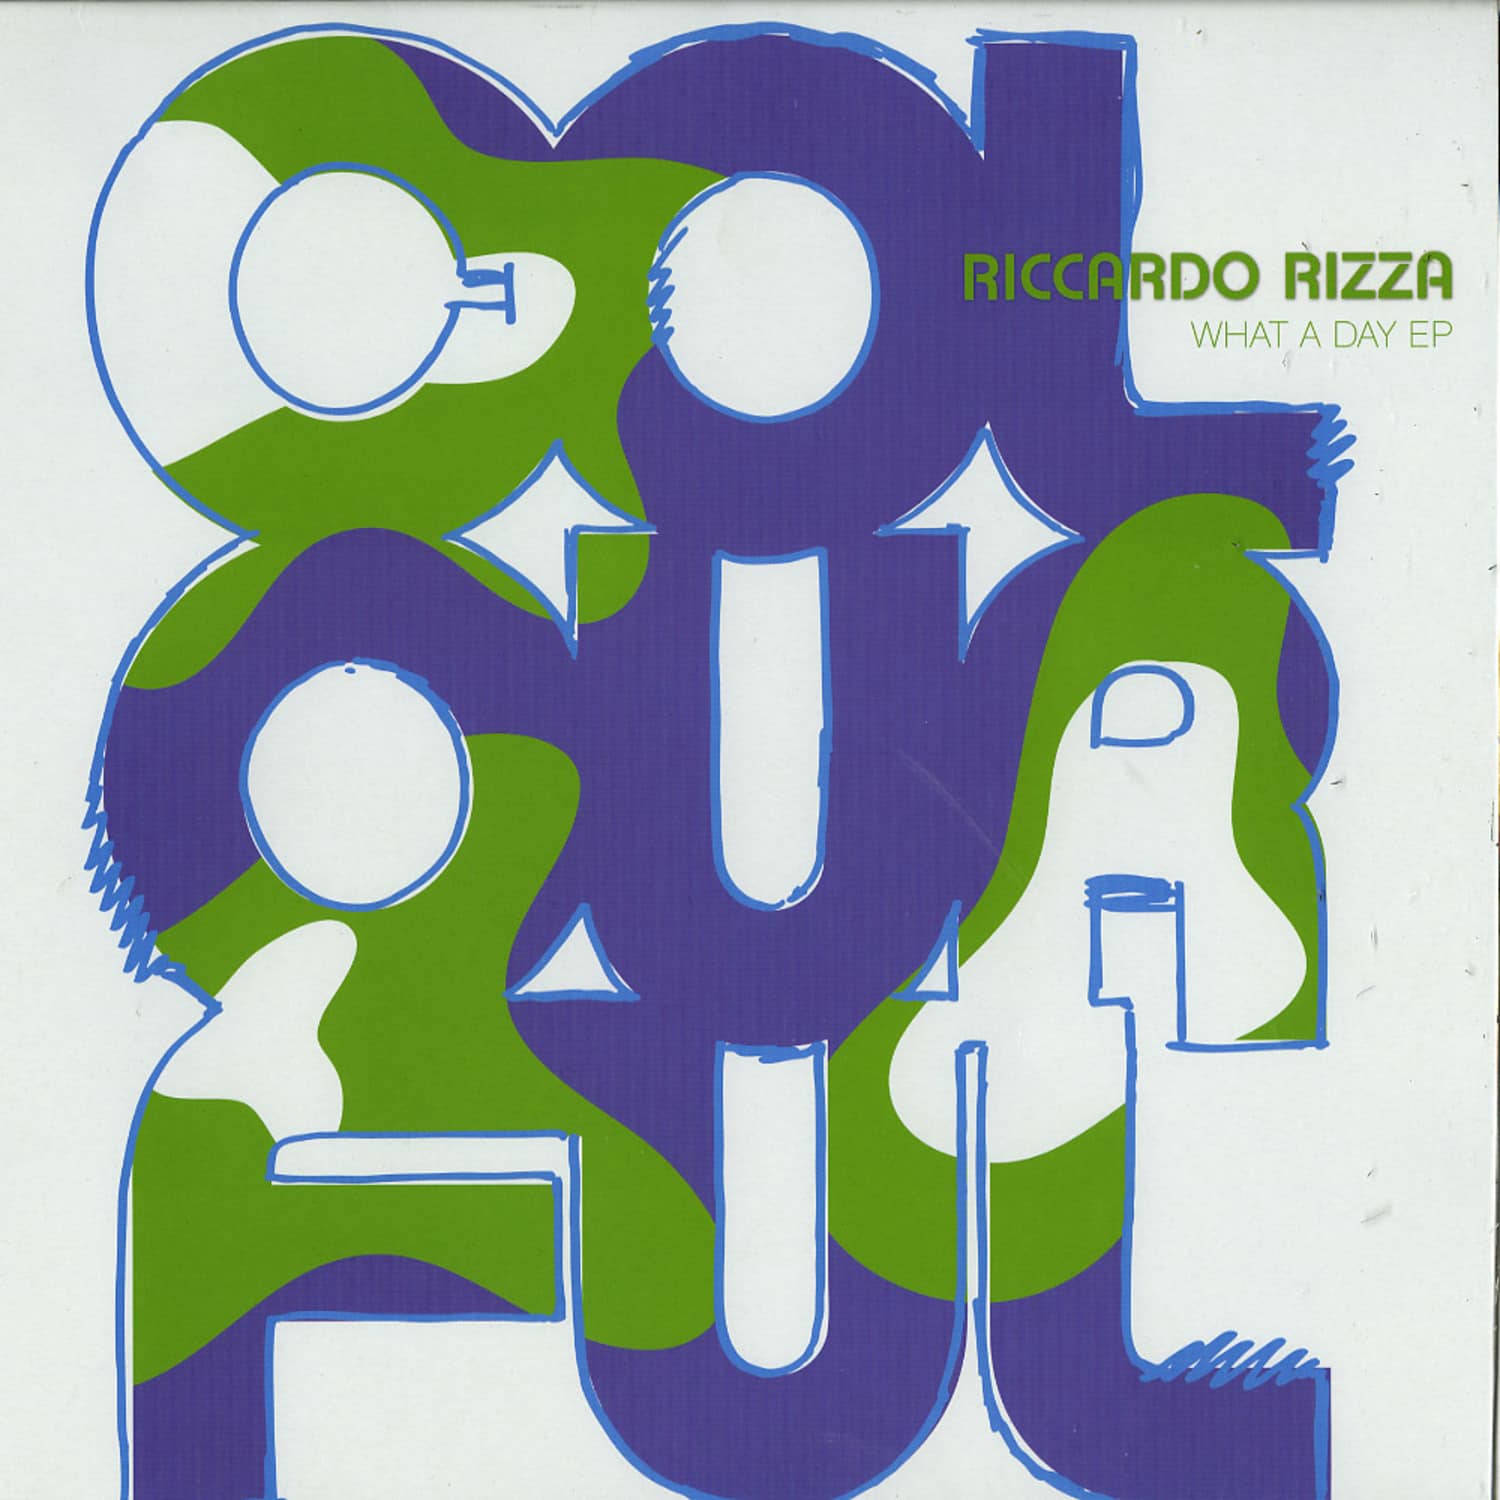 Riccardo Rizza - WHAT A DAY EP, MARIO AUREO RMX